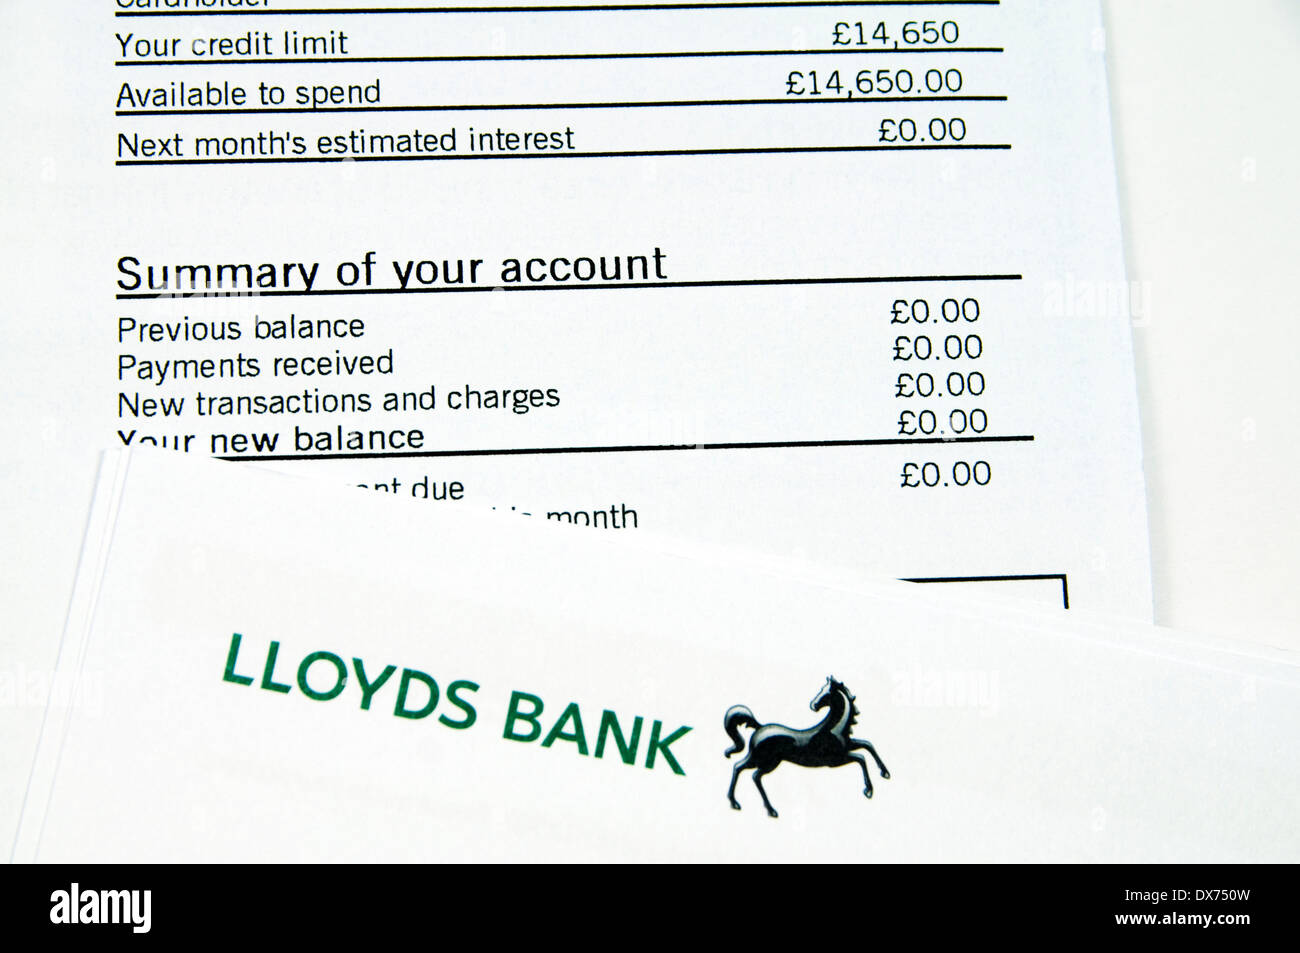 Lloyds Kreditkartenabrechnung mit nichts wegen. Stockfoto